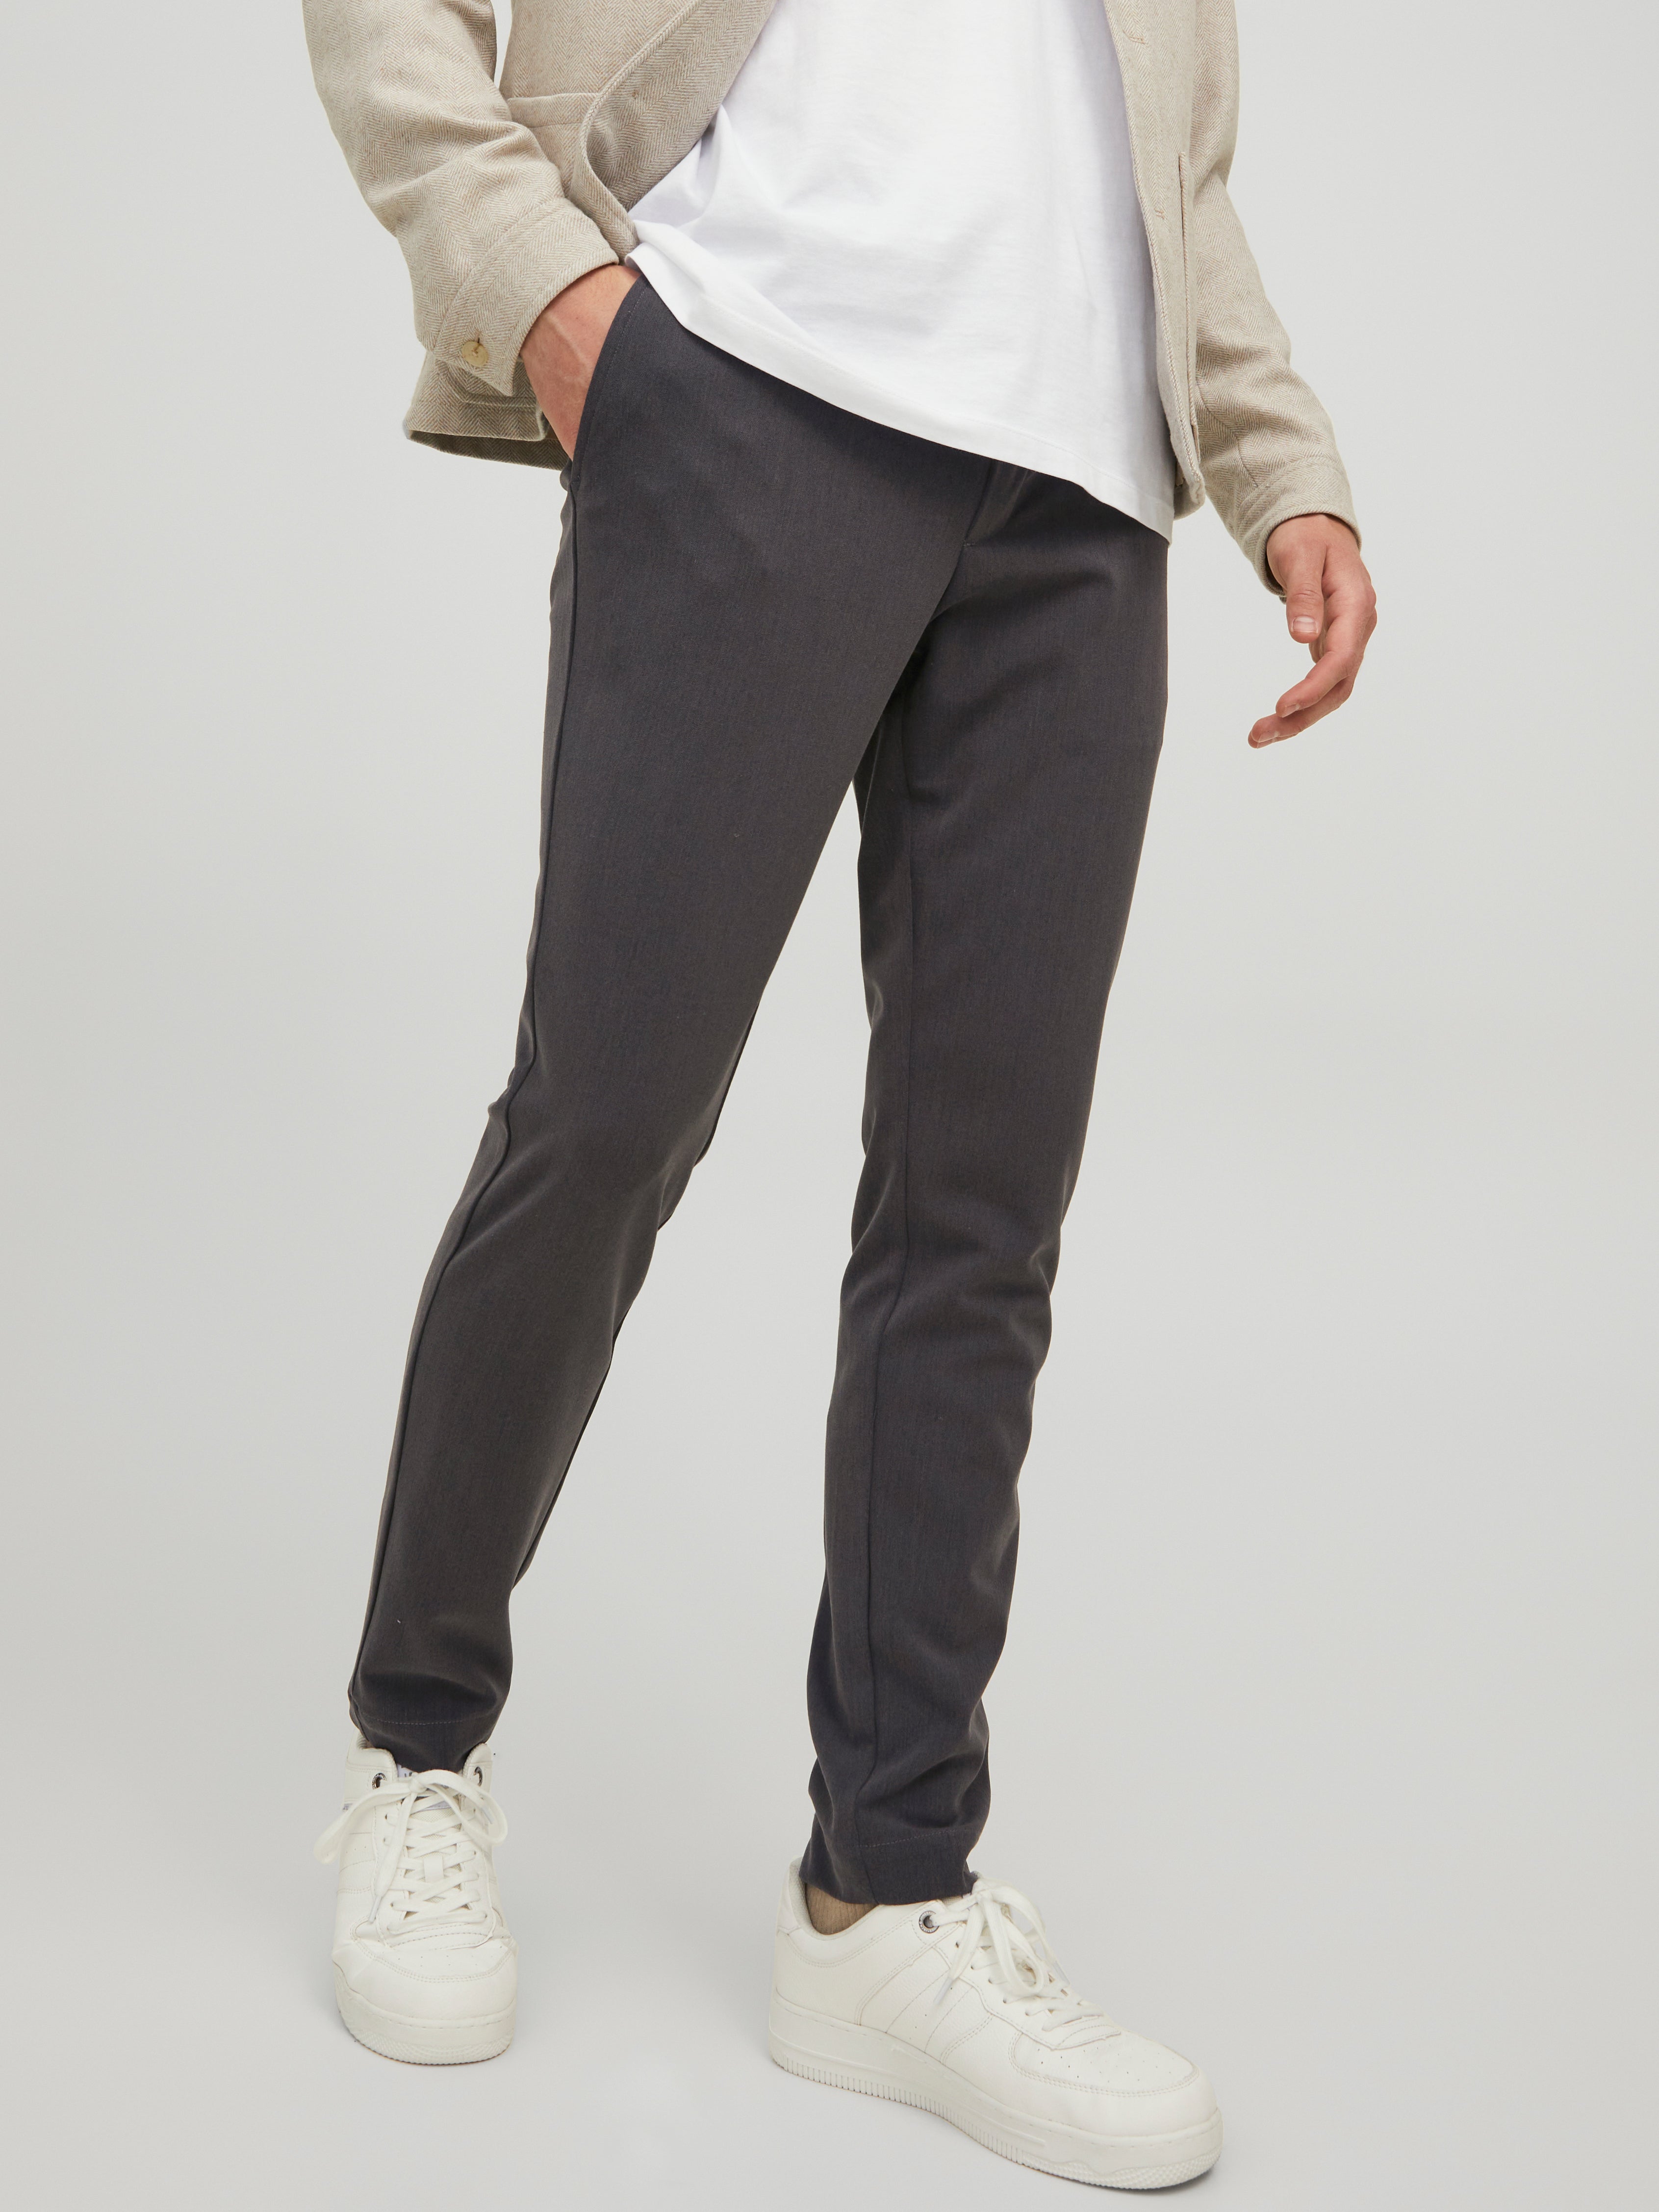 Brunello Cucinelli Men's Pants Trousers Wool Five Pocket US Size 30 x 34 EU  46 | eBay